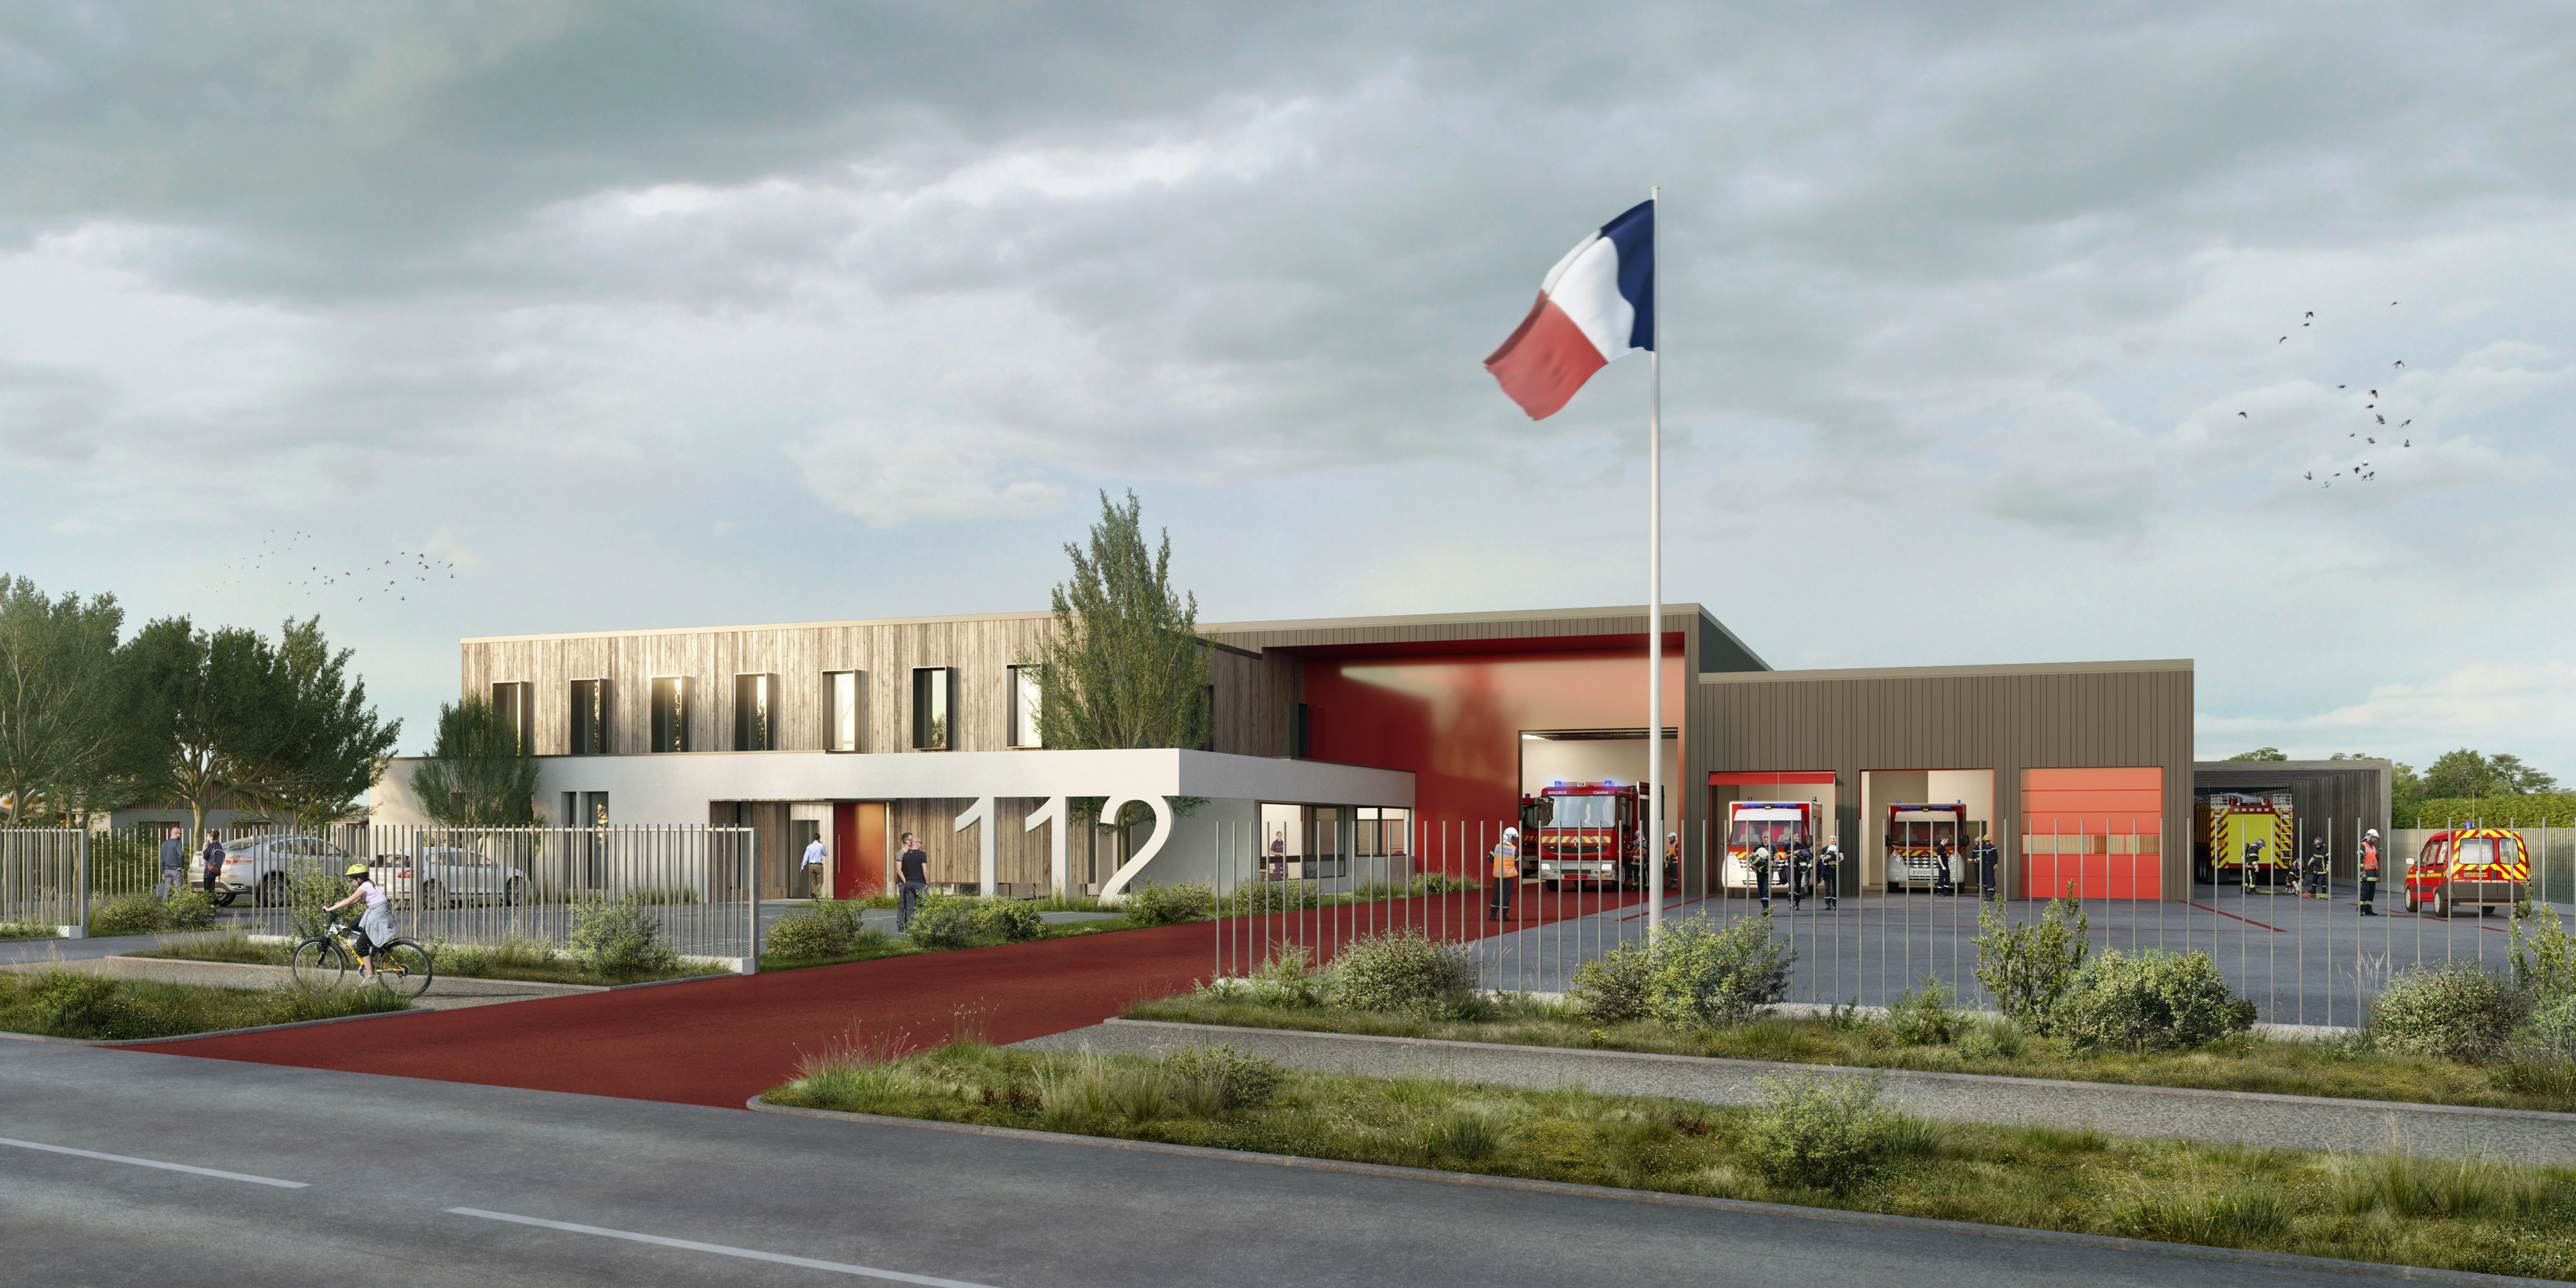 BPG & Associés - pompiers - Concours CIS Sait pierre d'oléron - image 3D - render - archiviz - image de synthèse -CIS Charente